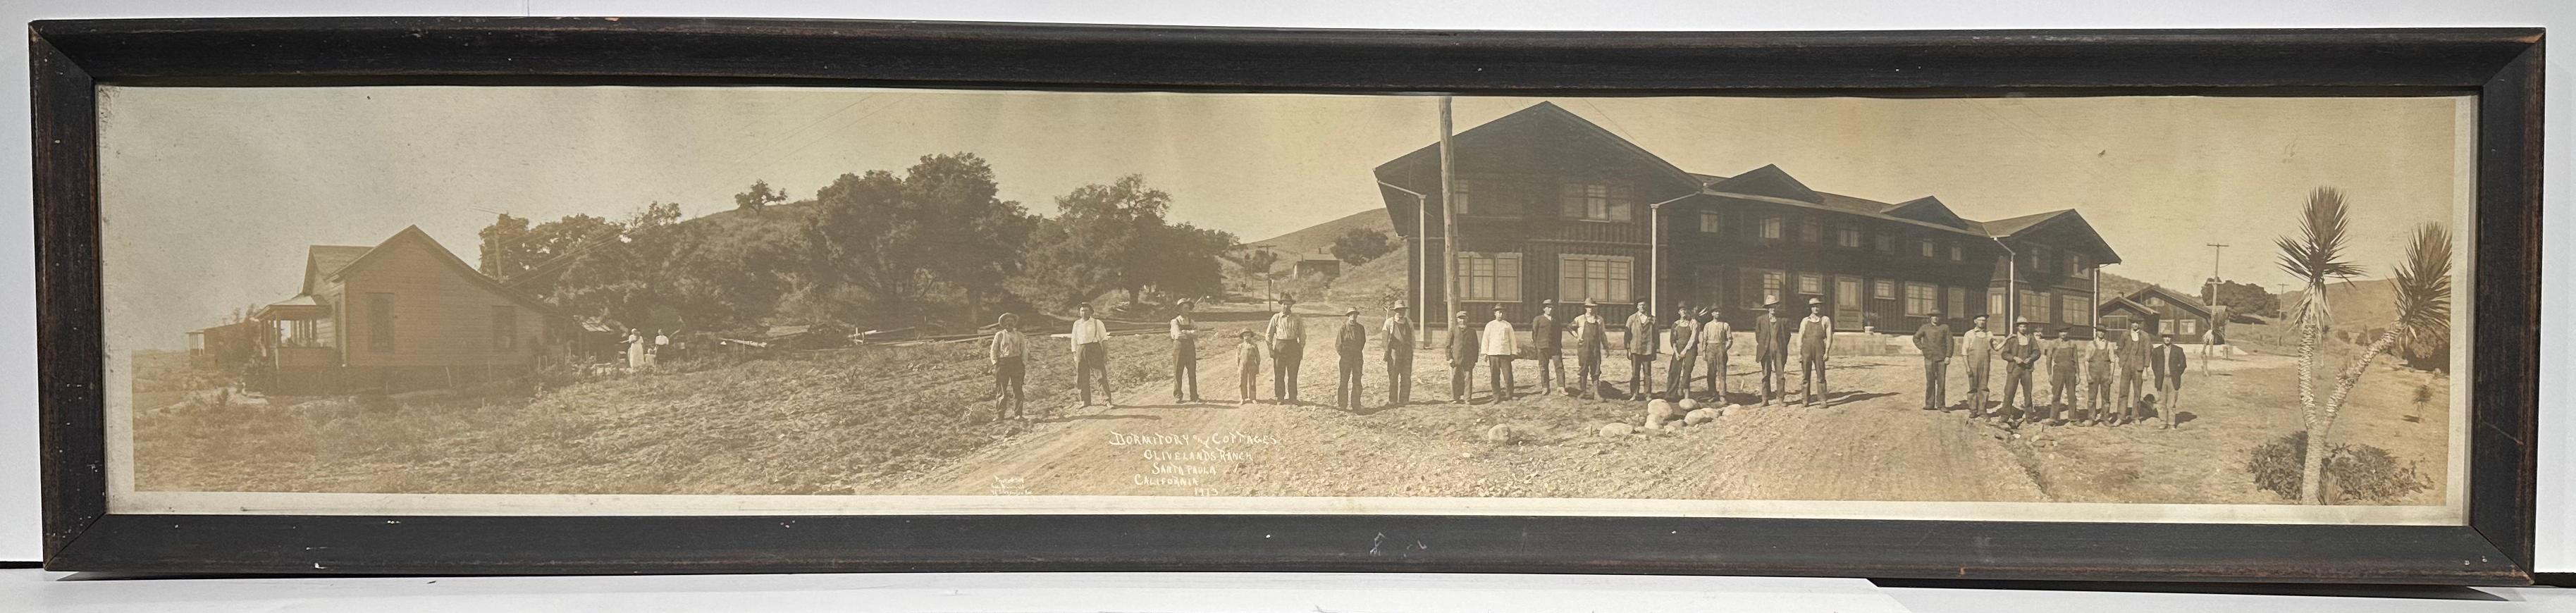 Black and White Photograph Schuyler U. Bunnell - Photographie ancienne du ranch Limoneira de Santa Paula CA, en olivelands, 1913